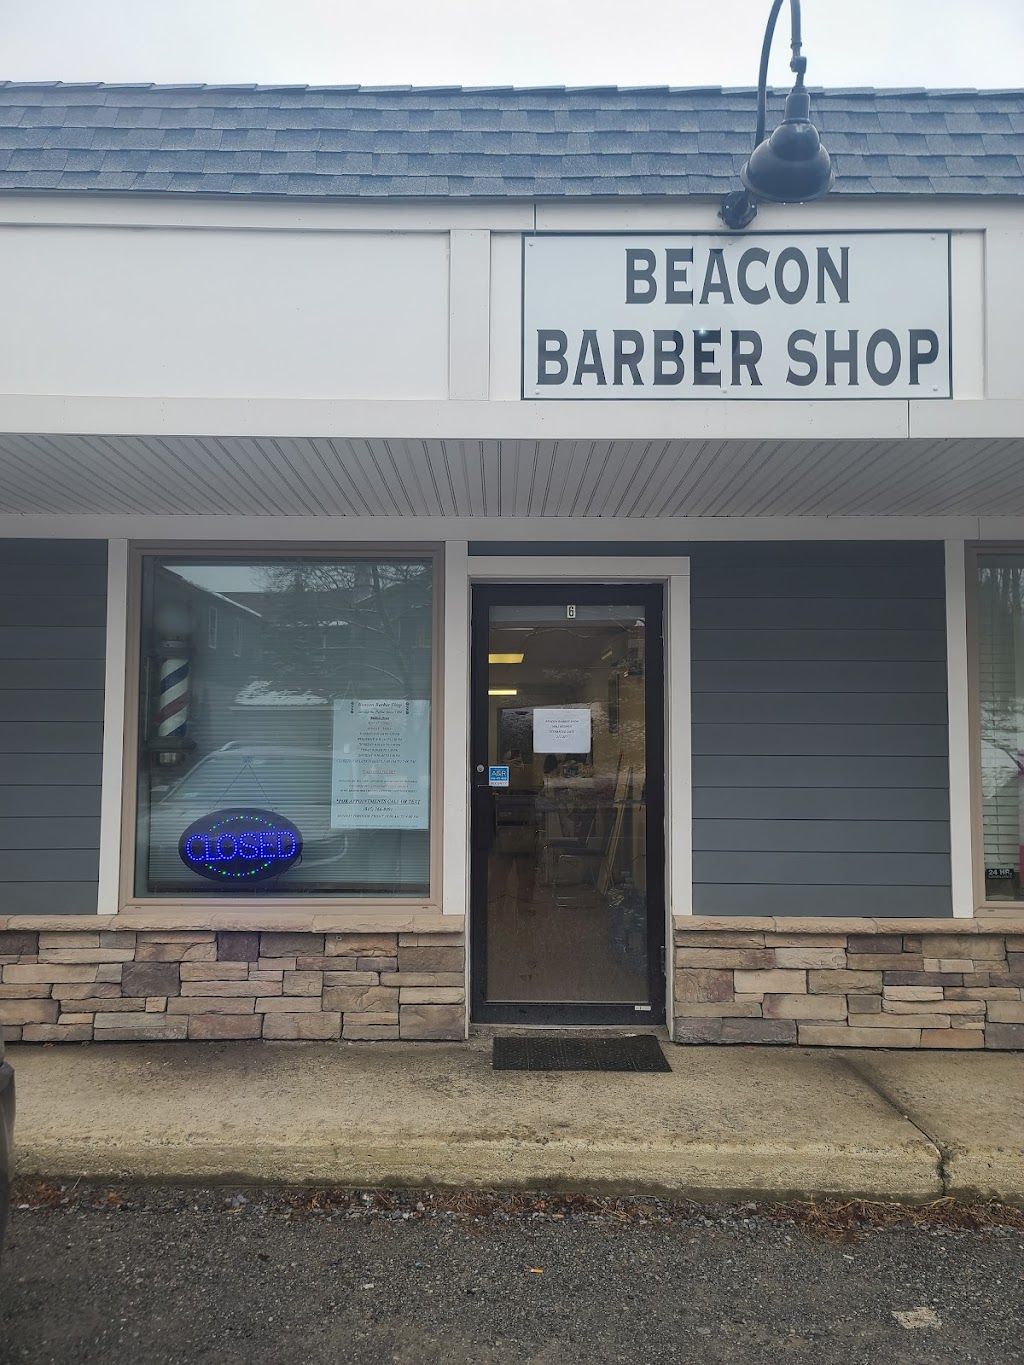 Beacon Barber Shop | 1164 NY-9G Suite 6, Hyde Park, NY 12538 | Phone: (845) 366-0091